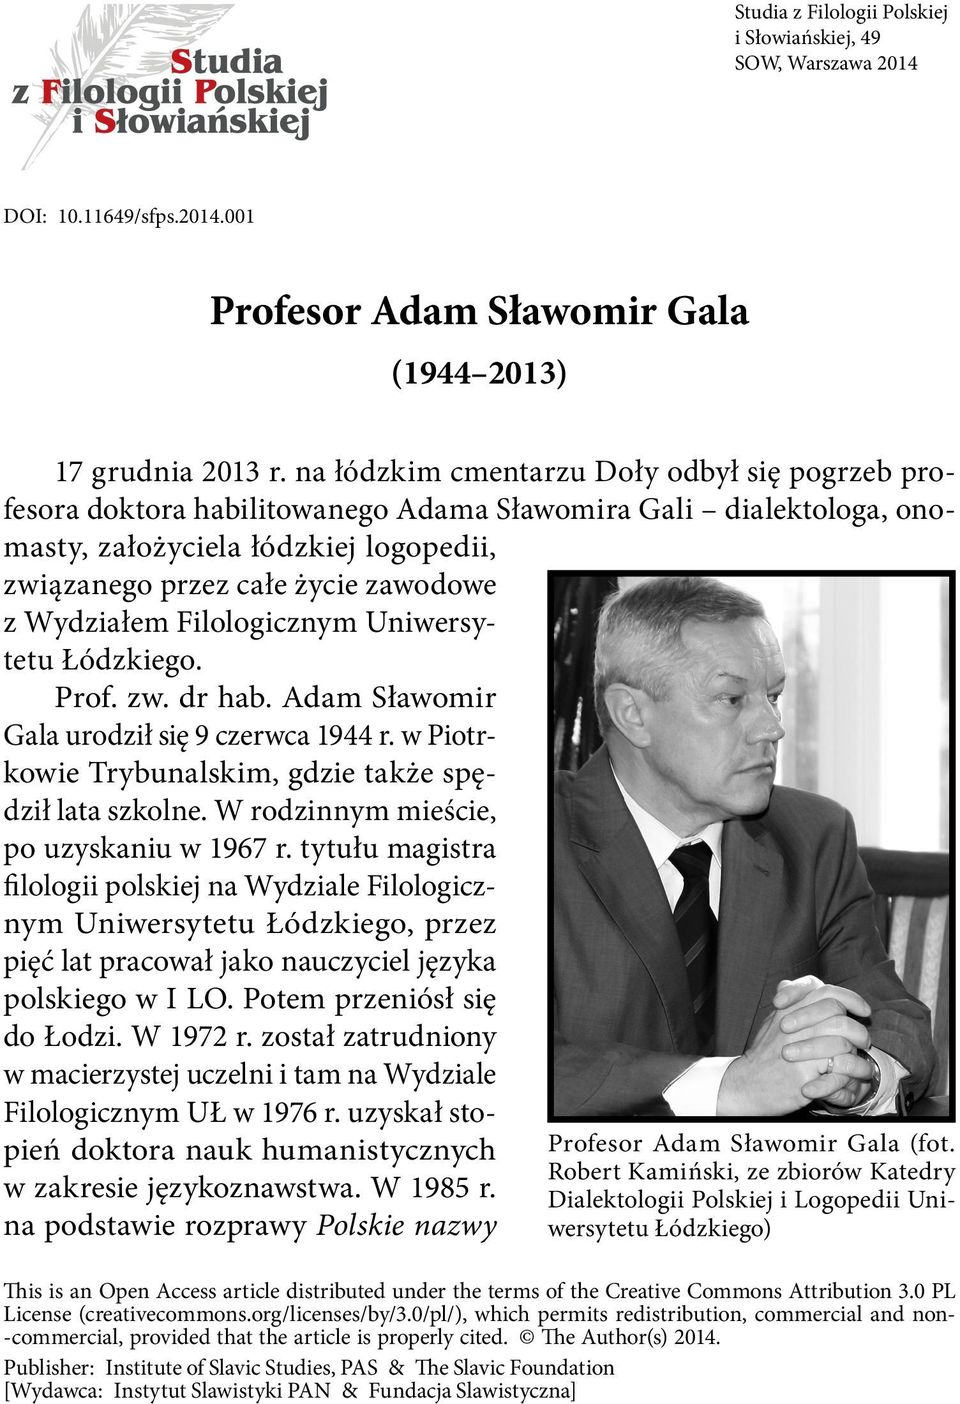 Wydziałem Filologicznym Uniwersytetu Łódzkiego. Prof. zw. dr hab. Adam Sławomir Gala urodził się 9 czerwca 1944 r. w Piotrkowie Trybunalskim, gdzie także spędził lata szkolne.